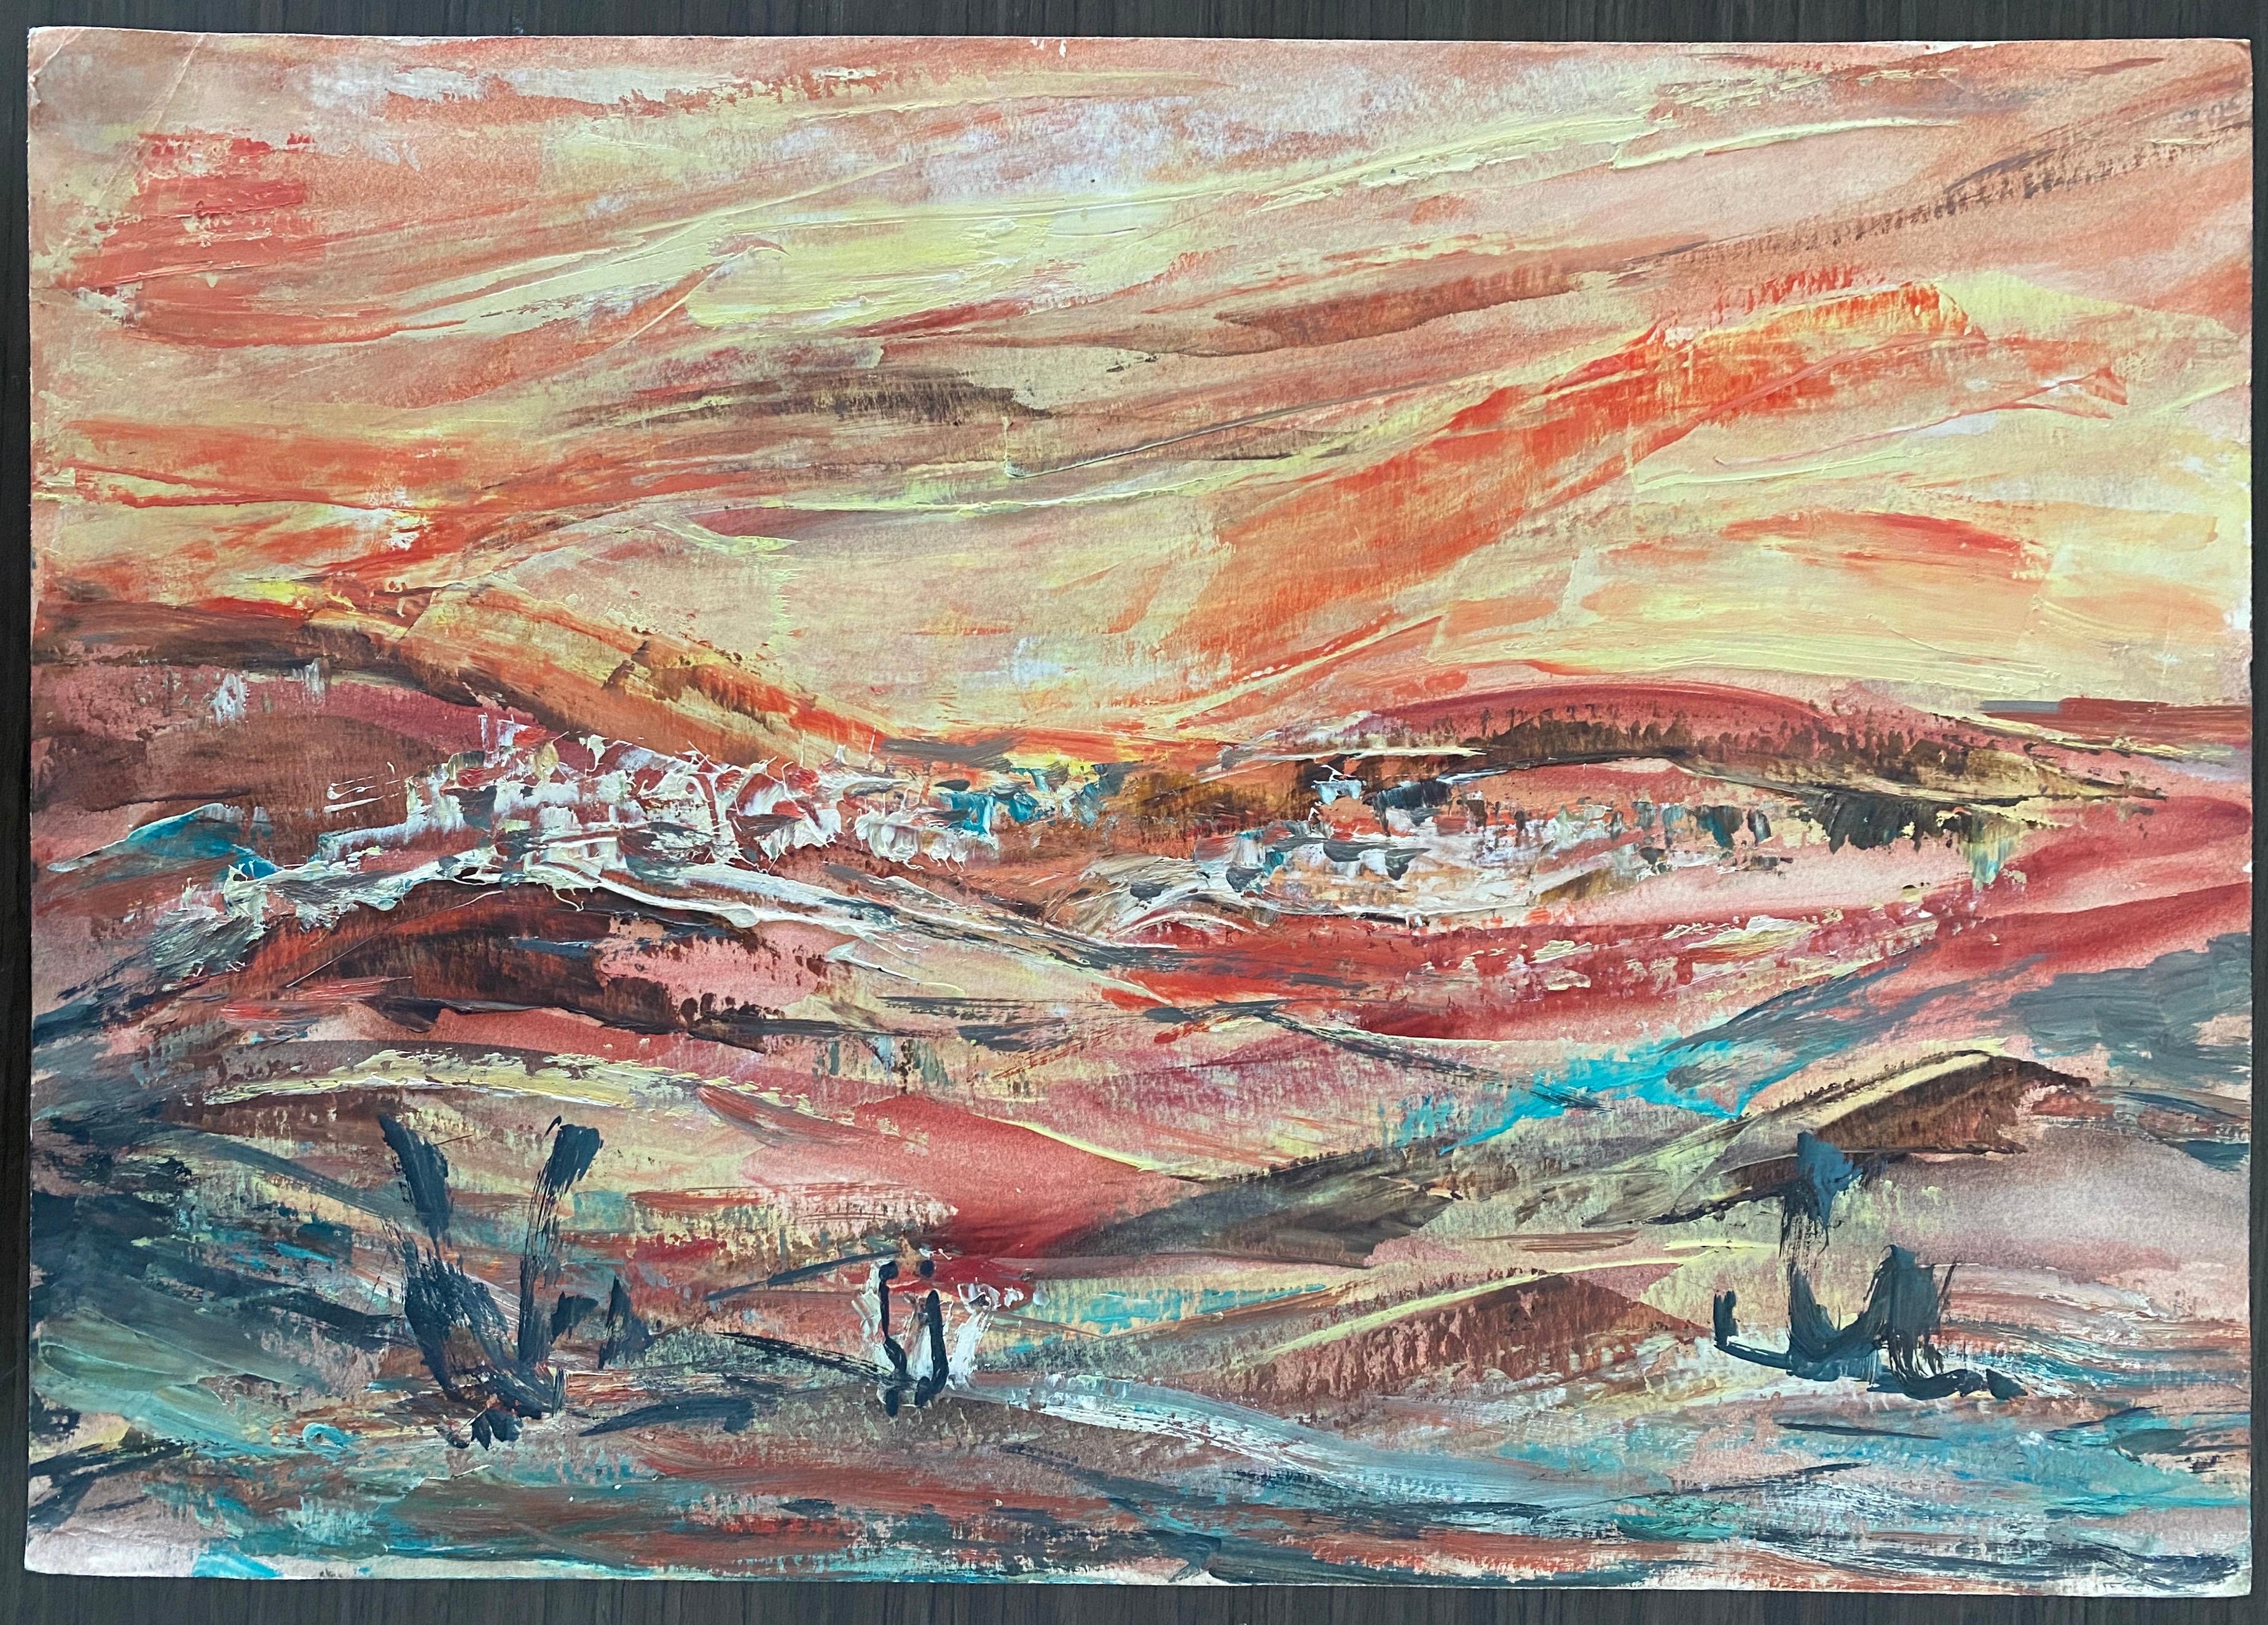 Grande armoire israélienne hongroise  Peinture de paysage de collines juives, Jérusalem, Israël 